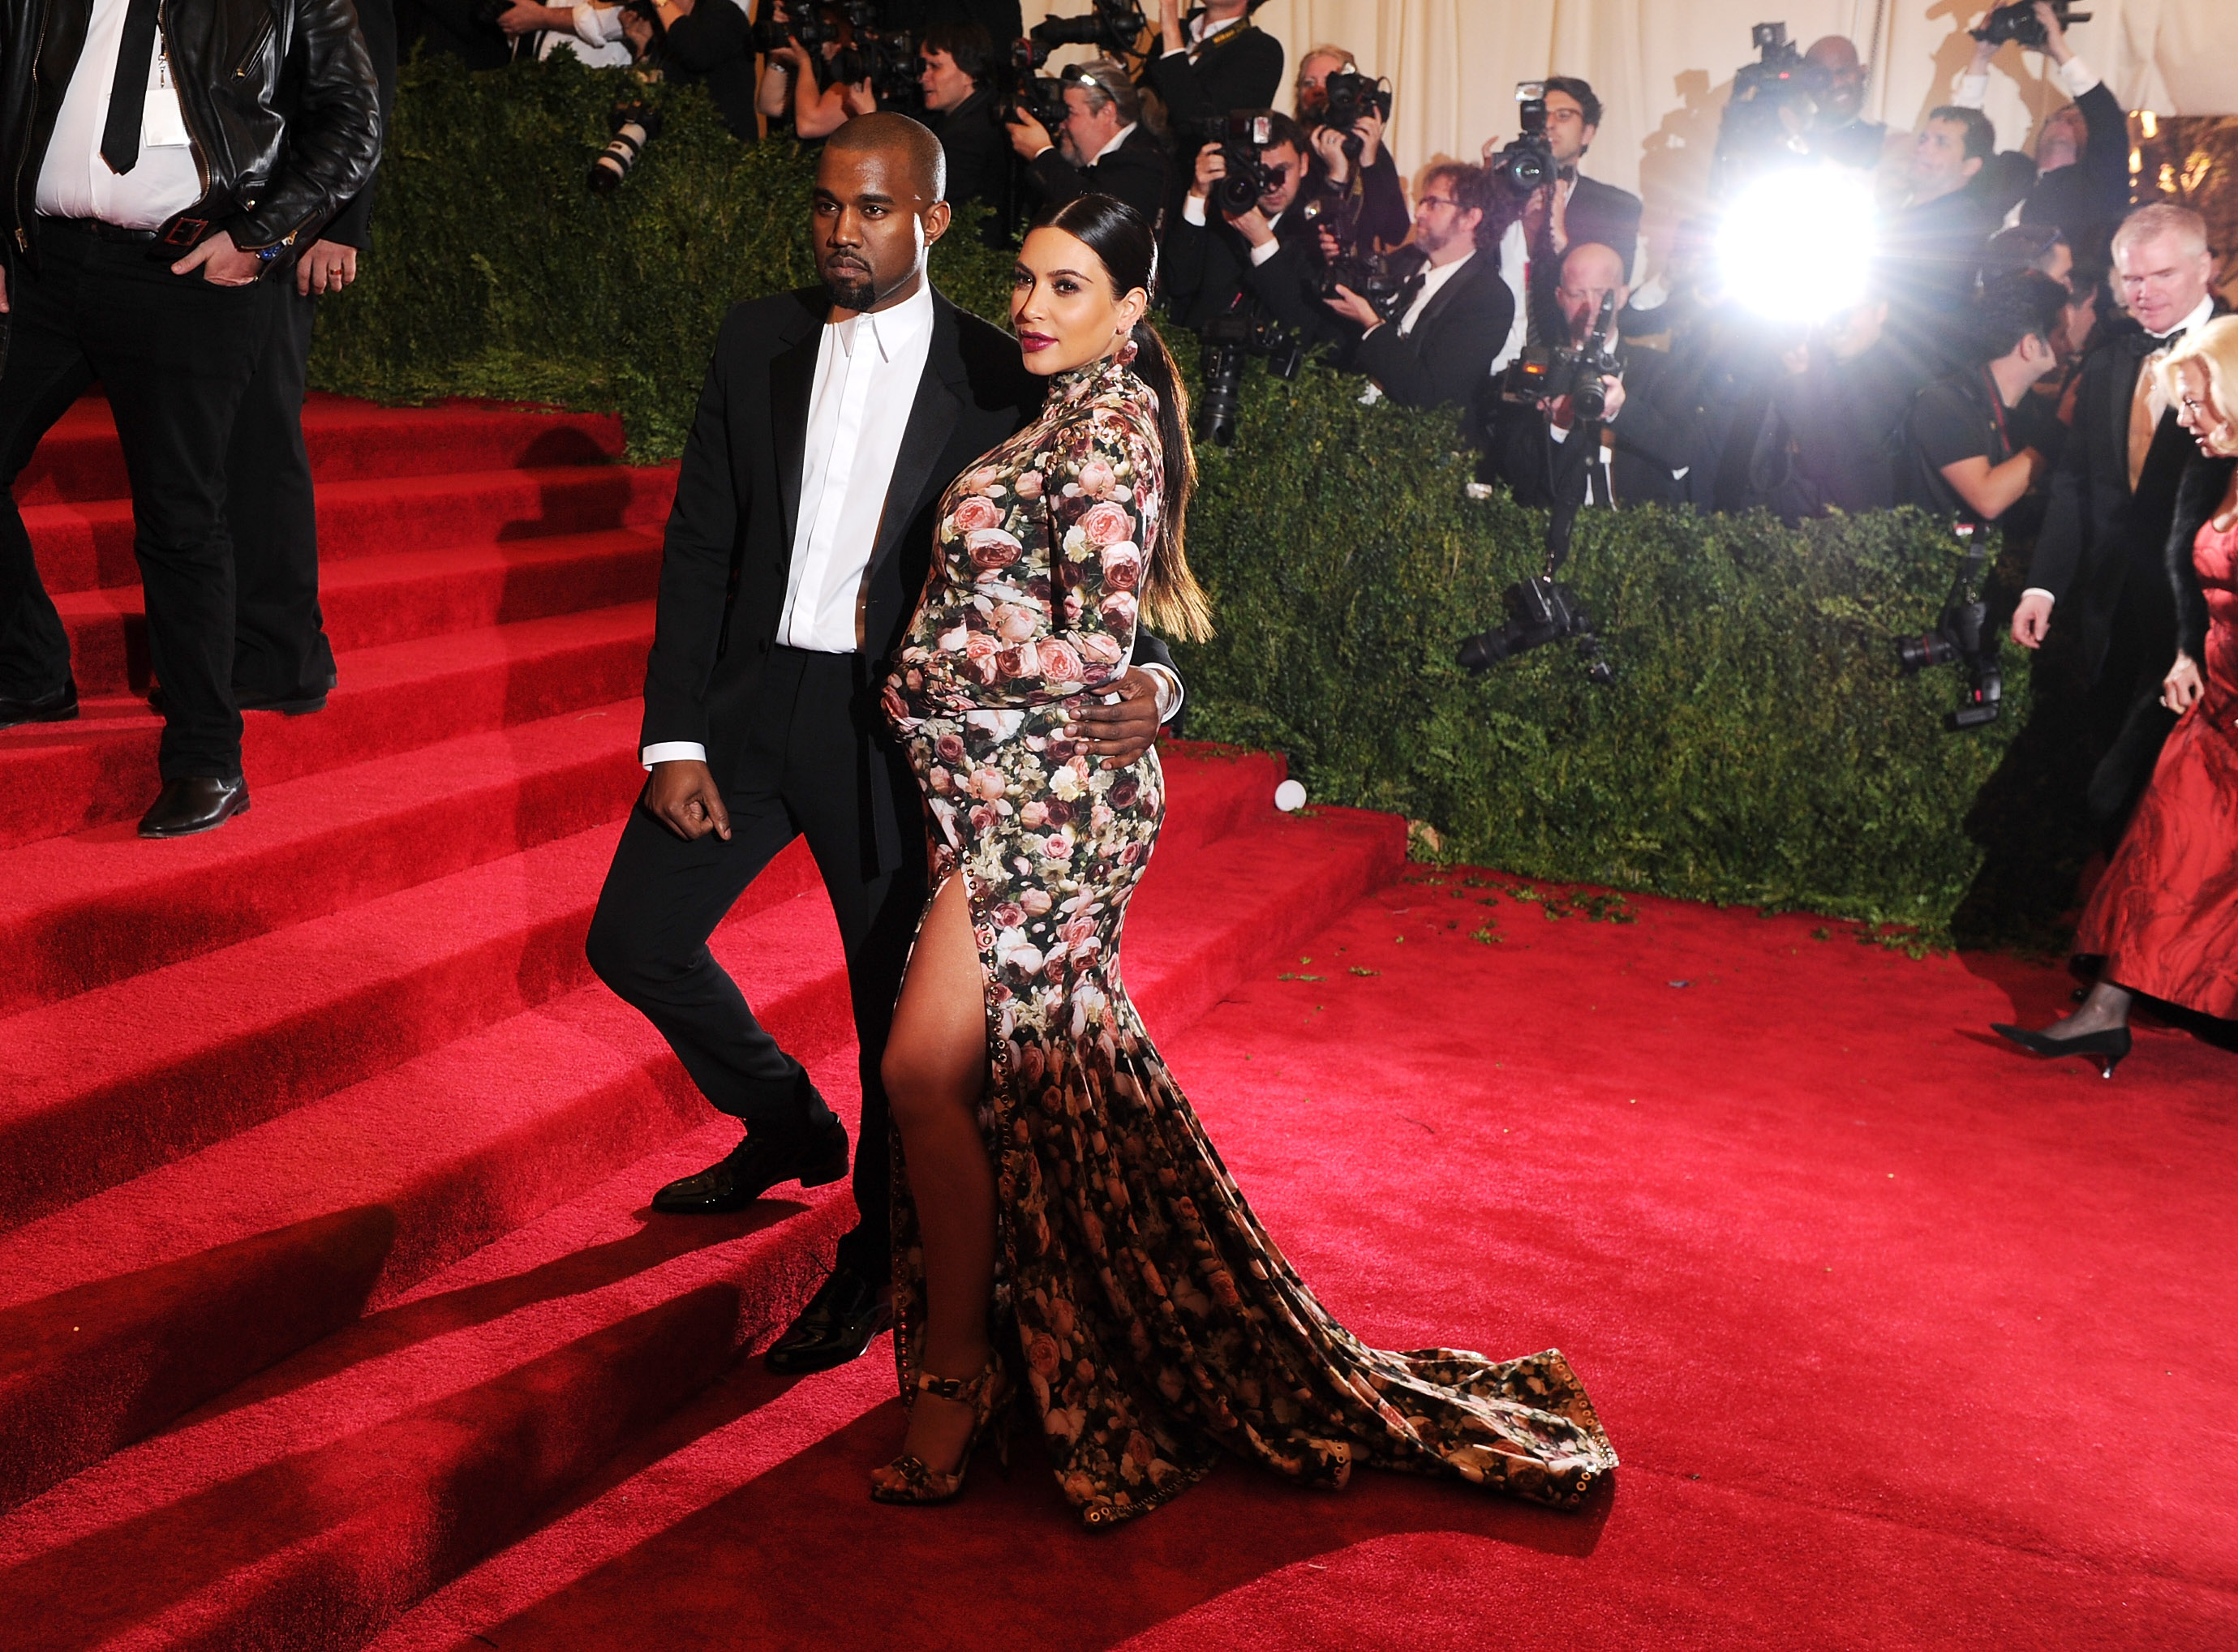 Kanye West and Kim Kardashian West posing at the 2013 Met Gala.